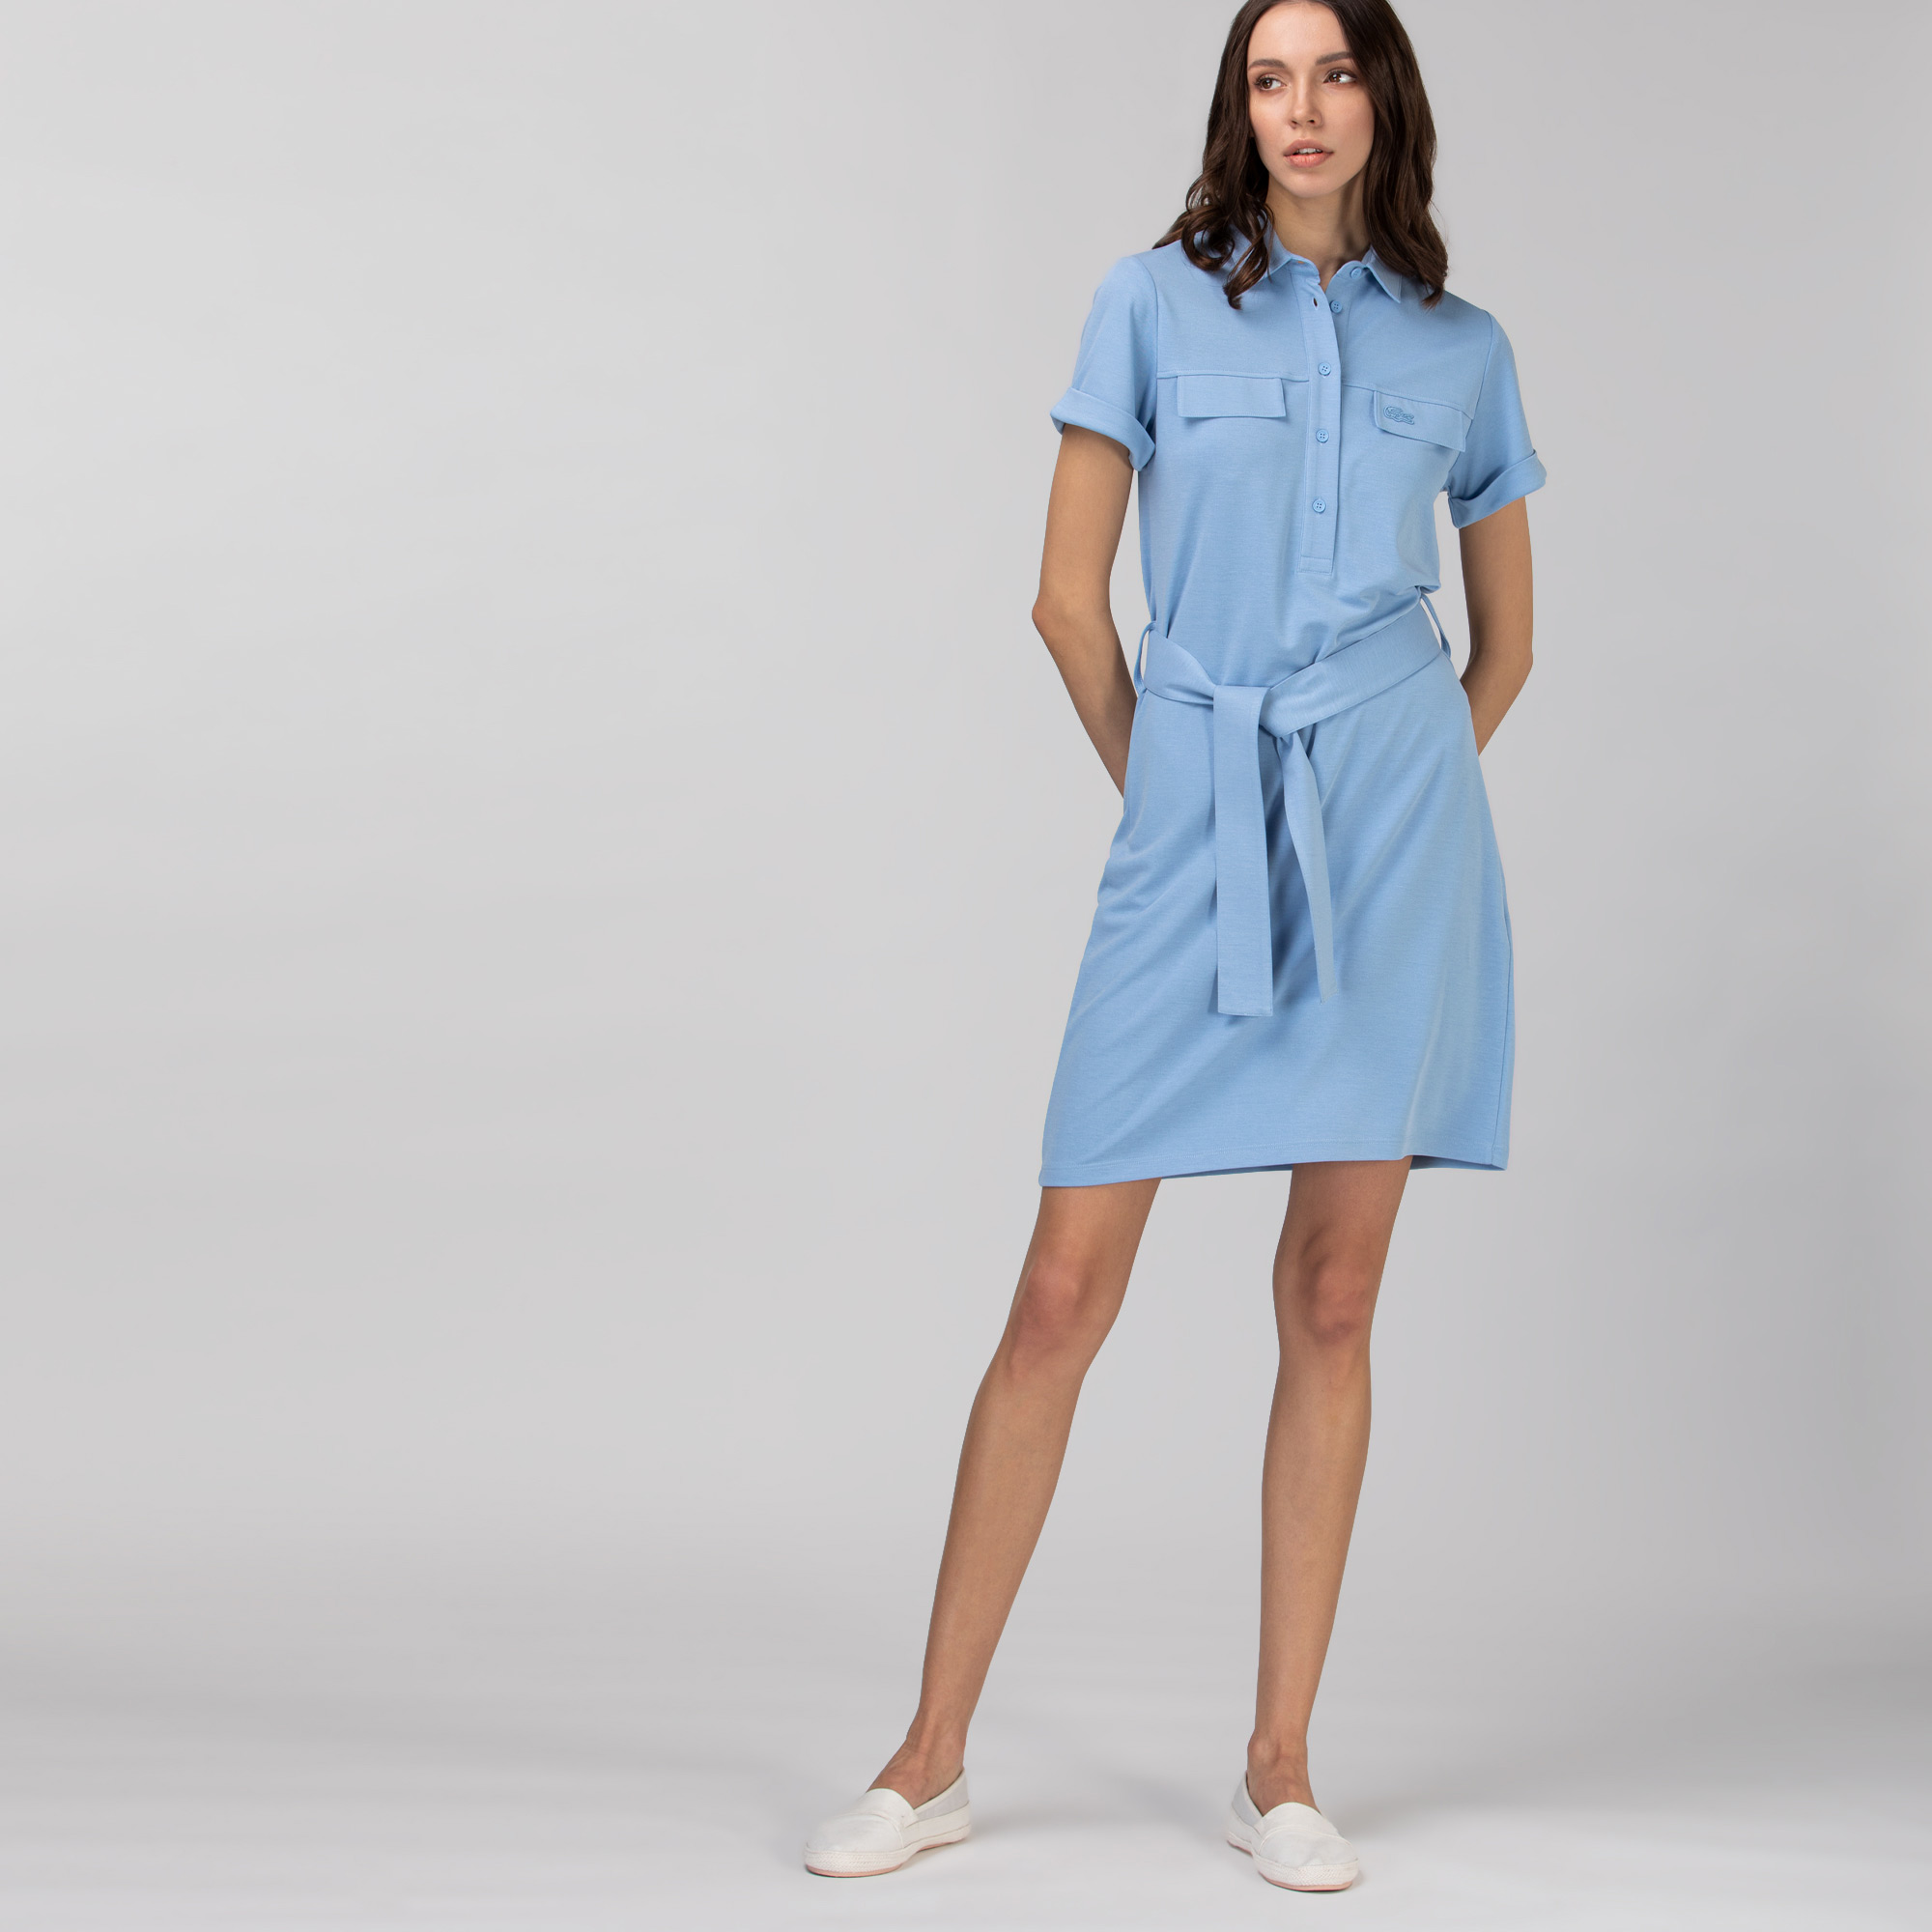 Lacoste Kadın Kısa Kollu Gömlek Yaka Açık Mavi Elbise. 1